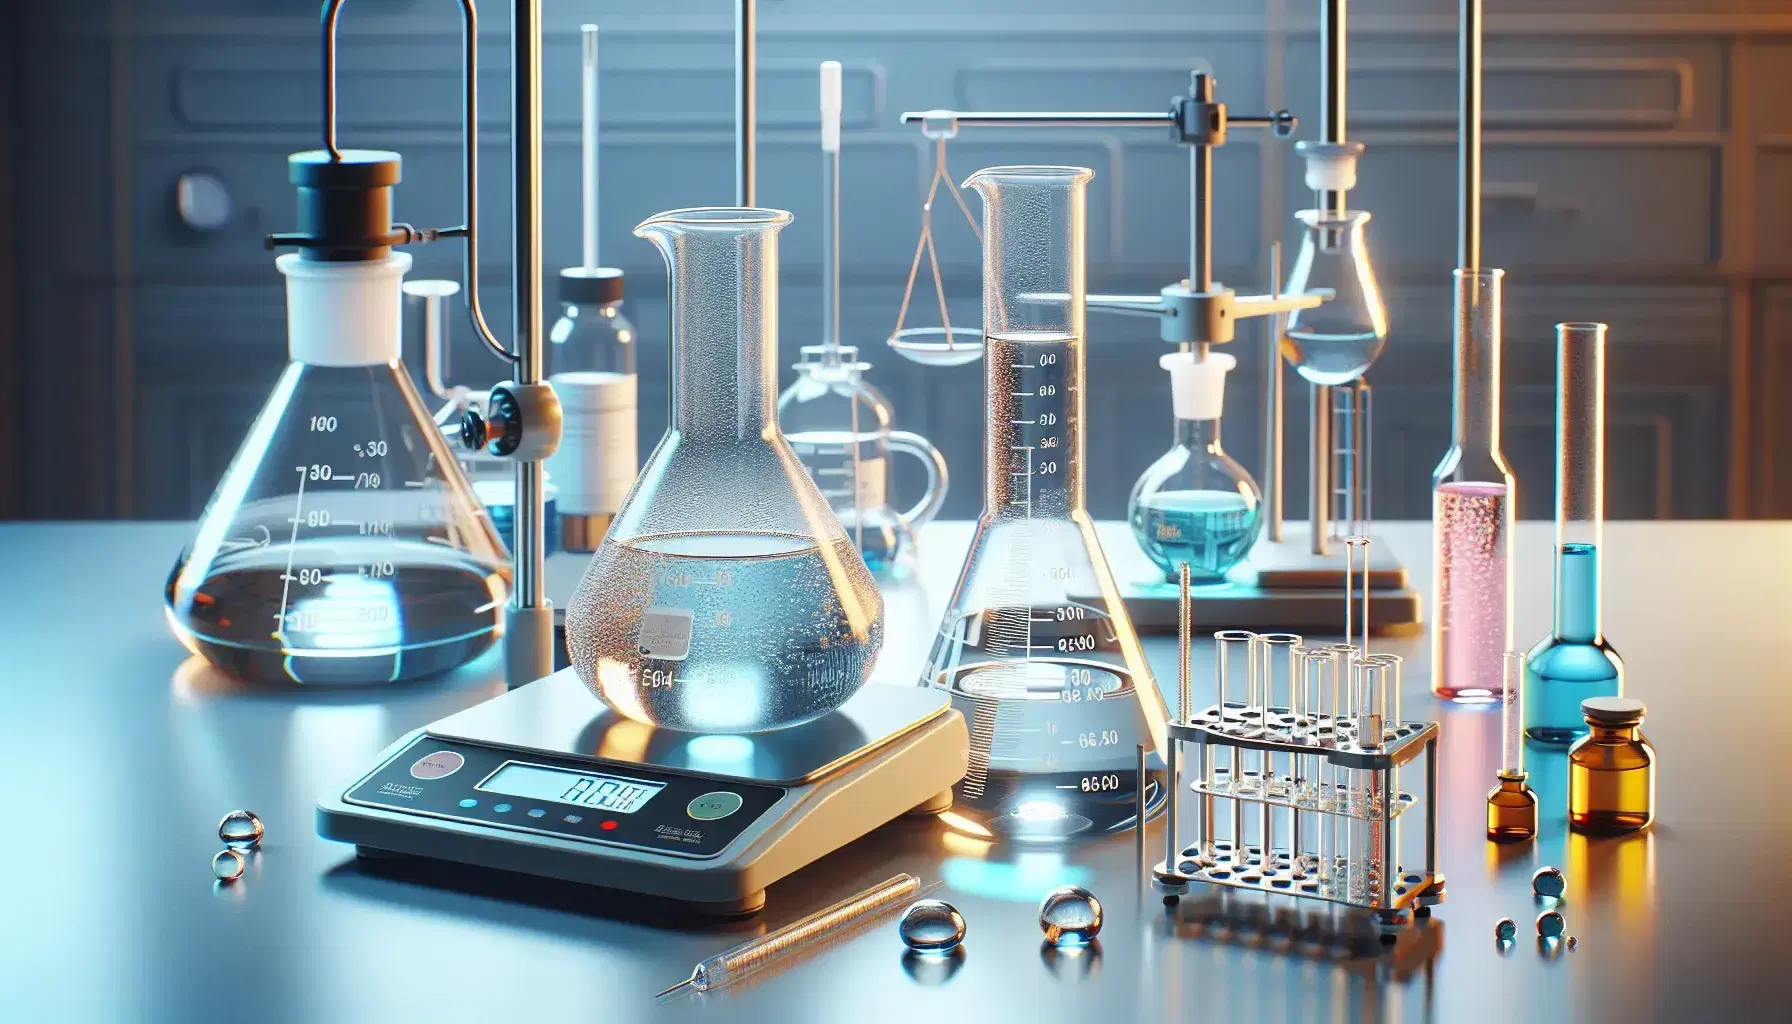 Laboratorio químico con Erlenmeyer de solución azul, cilindro graduado, tubo de ensayo amarillo en soporte, vaso con solución rosa y balanza analítica.